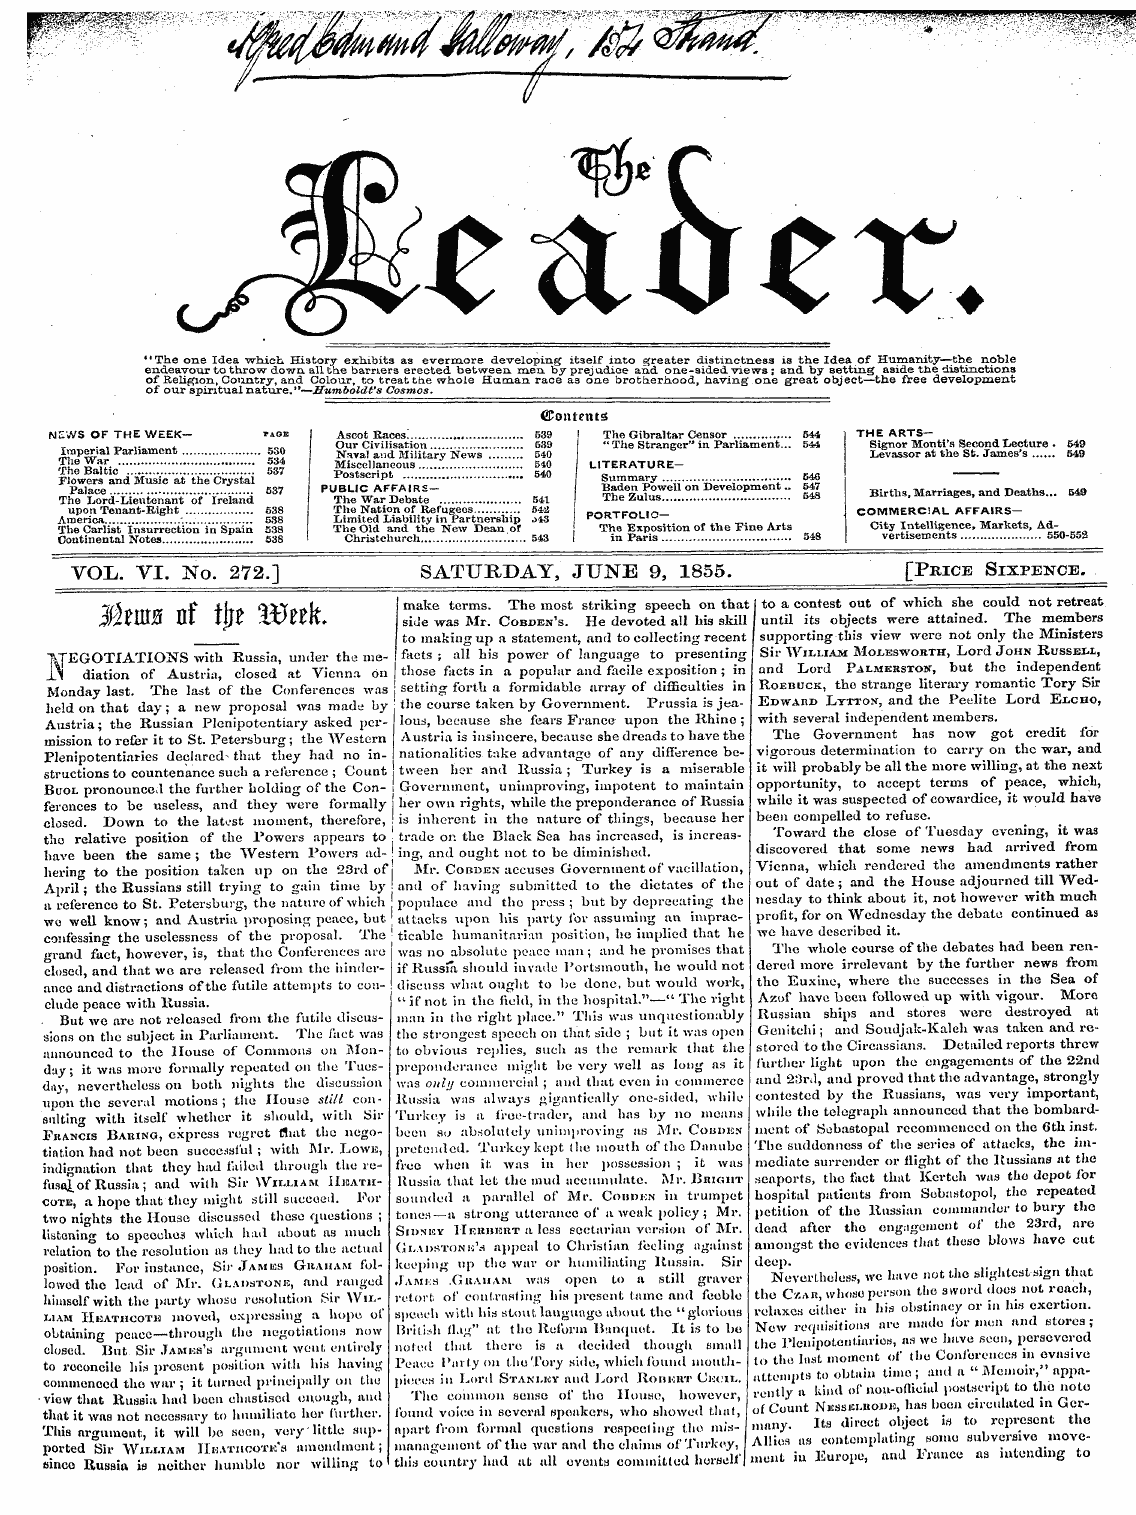 Leader (1850-1860): jS F Y, 2nd edition - Vol.. Vi. No. 272.] Saturday, June 9, 18...